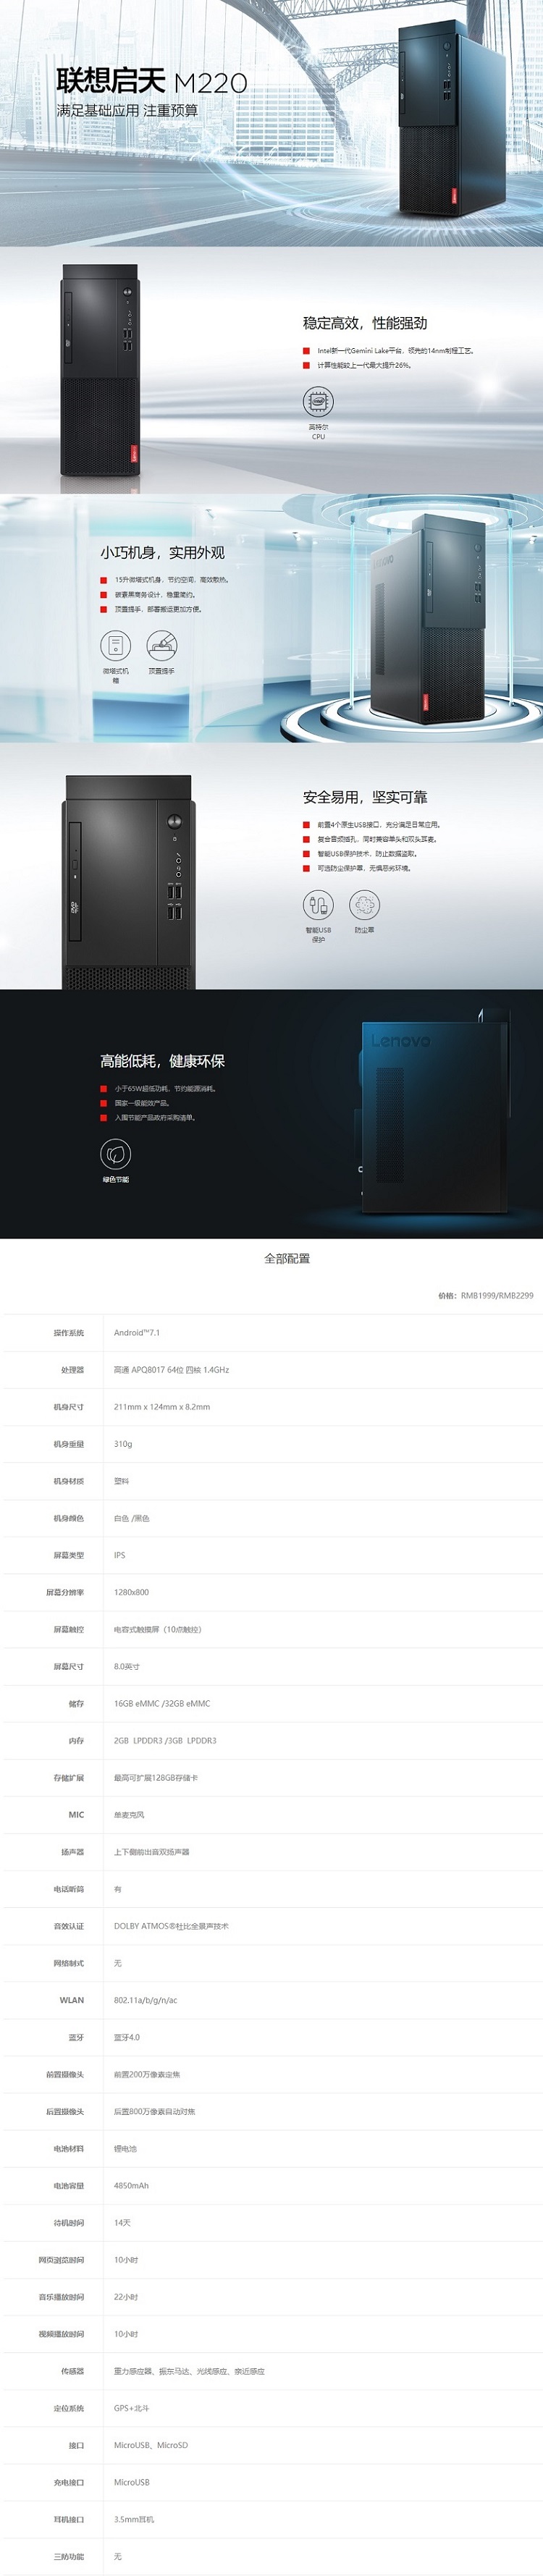 联想启天 M220台式机-联想分体台式机-联想中国(Lenovo China)商用官网.jpg